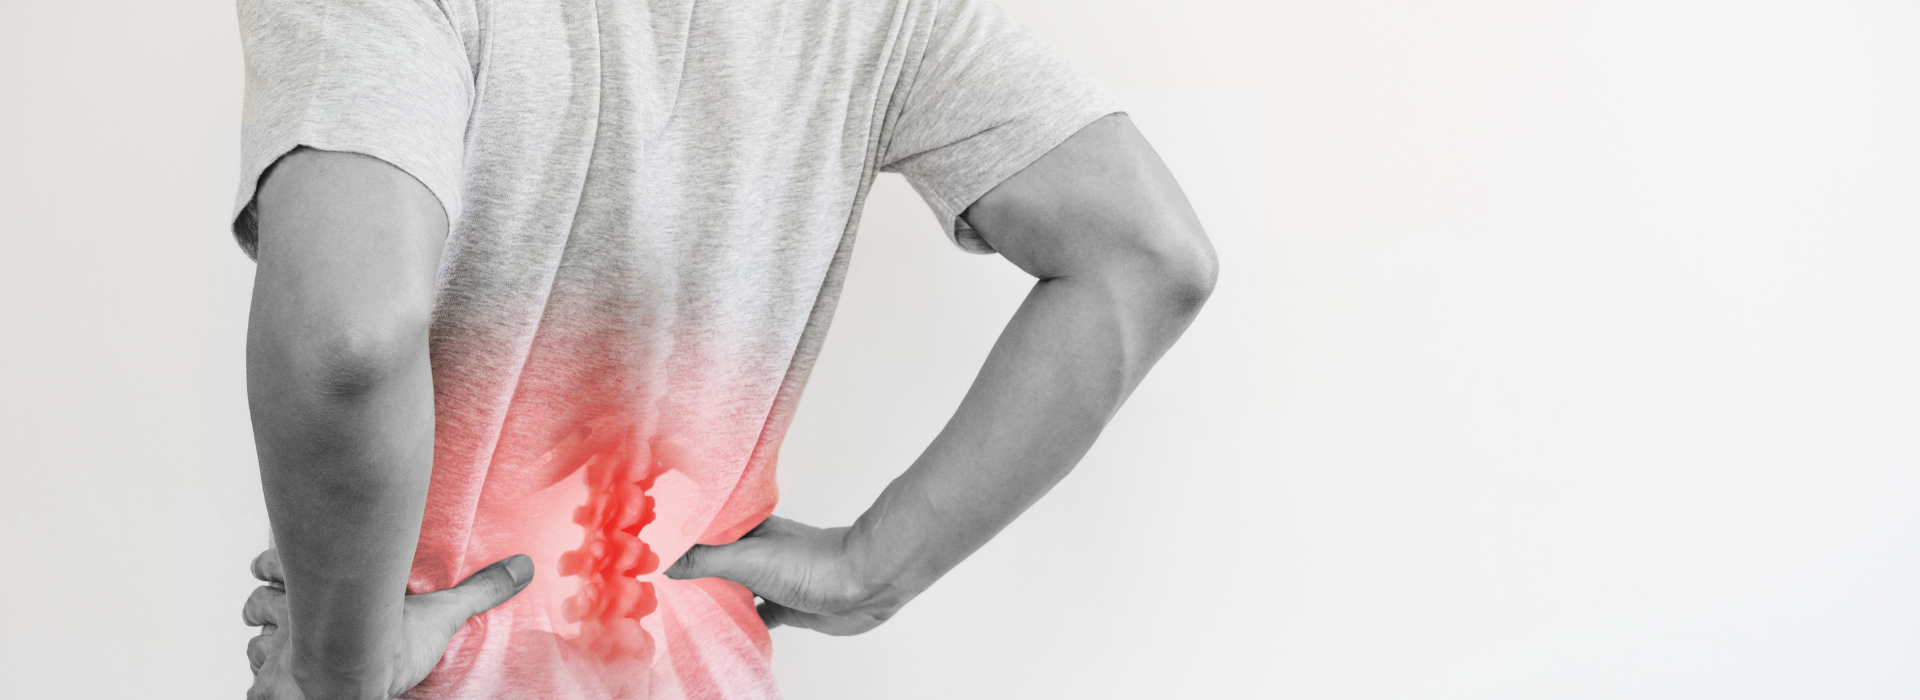 הידעתם? אחת מהסיבות העיקריות לכאבי גב תחתון היא יציבה לקויה. כאבי גב תחתון הם תופעה נפוצה המשפיעה על אנשים מכל הגילאים. הכאב יכול להיגרם ממגוון גורמים, החל מפציעה או דלקת ועד ליציבה לקויה או מתח נפשי. במאמר זה, נספר לכם כל מה שרציתם לדעת על כאבי גב תחתון ואולי לא היה לכם את מי לשאול…